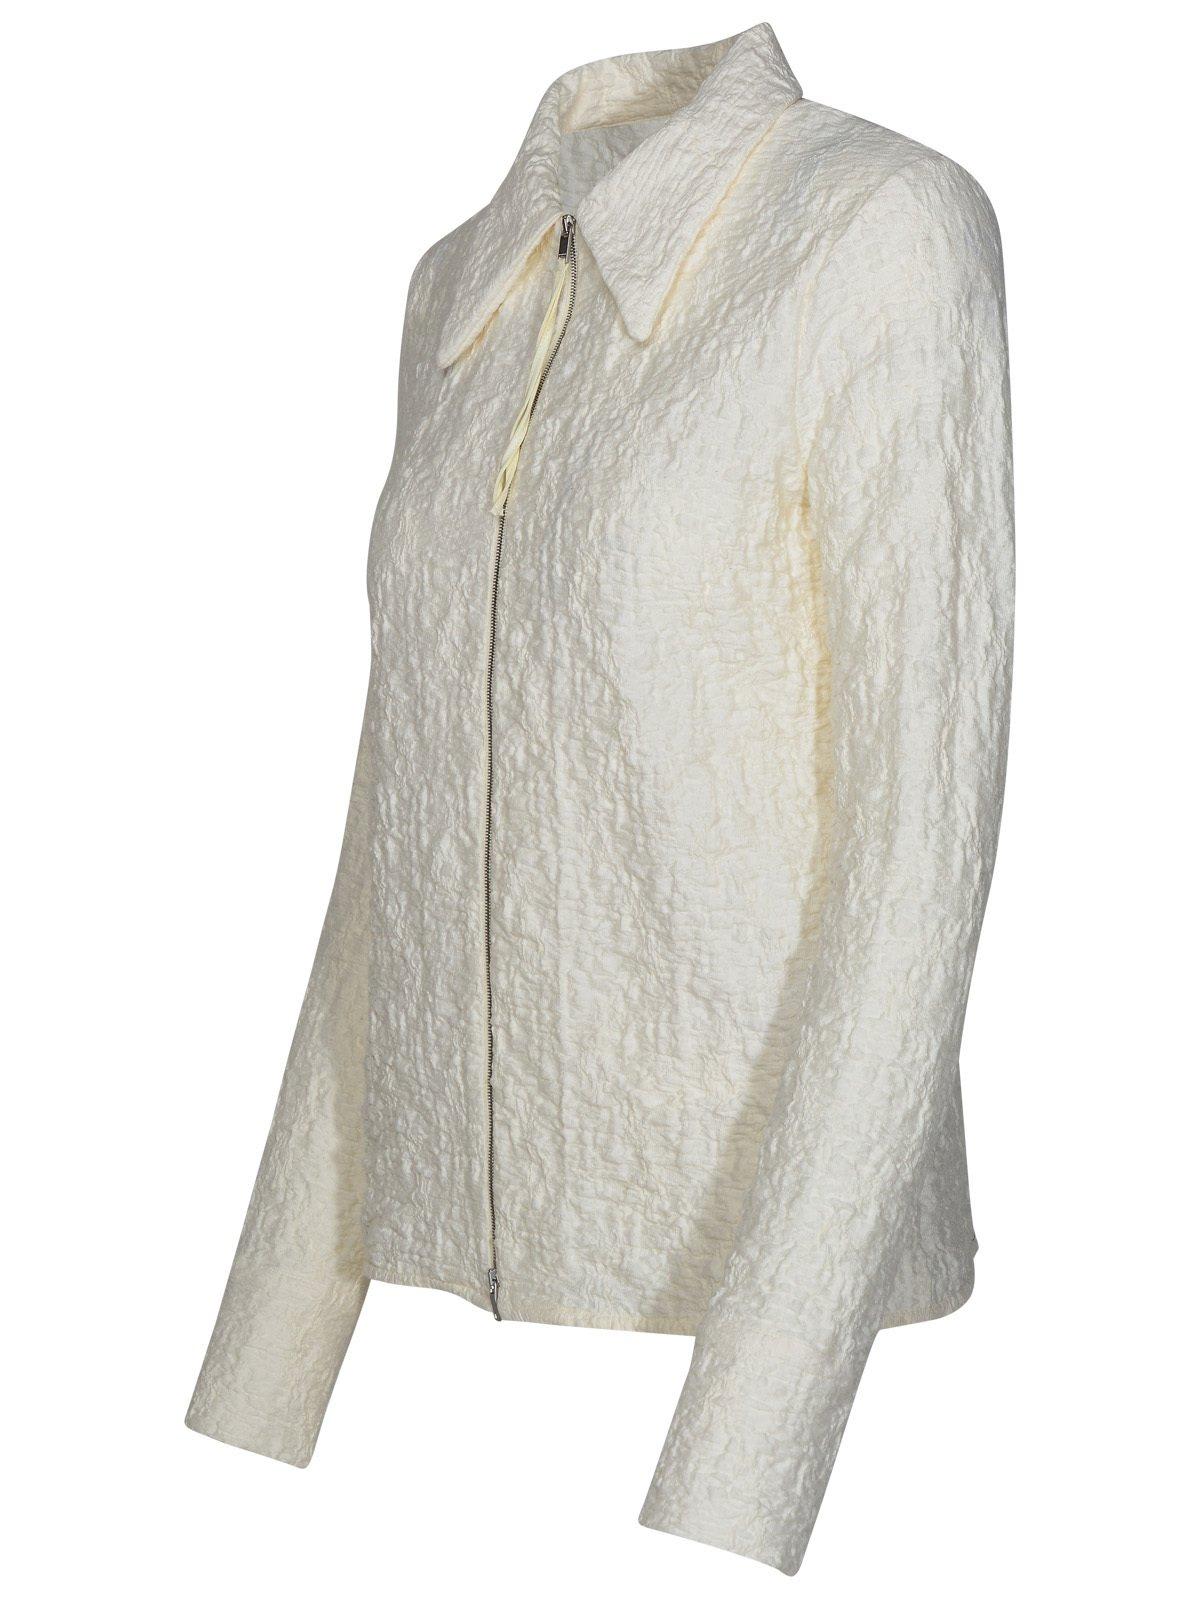 Shop Jil Sander Zip-up Crinkled Shirt In Ivory